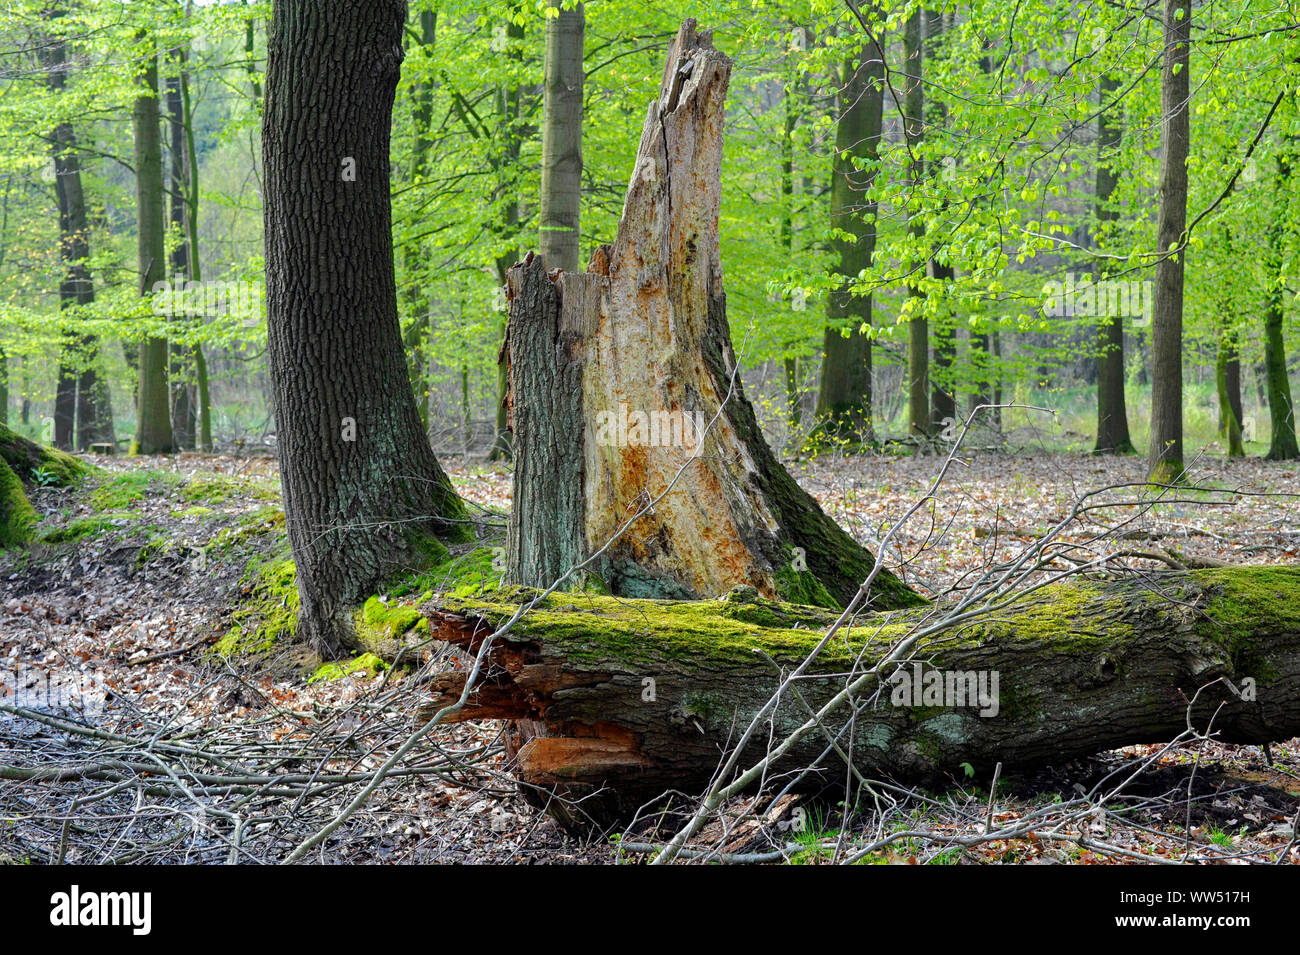 Paysage de forêt quasi-naturelle, le feuillage de la forêt mixte de hêtres, de cuivre solide avec les plus importants feuillus de l'Europe centrale, en plus de bois mort Banque D'Images